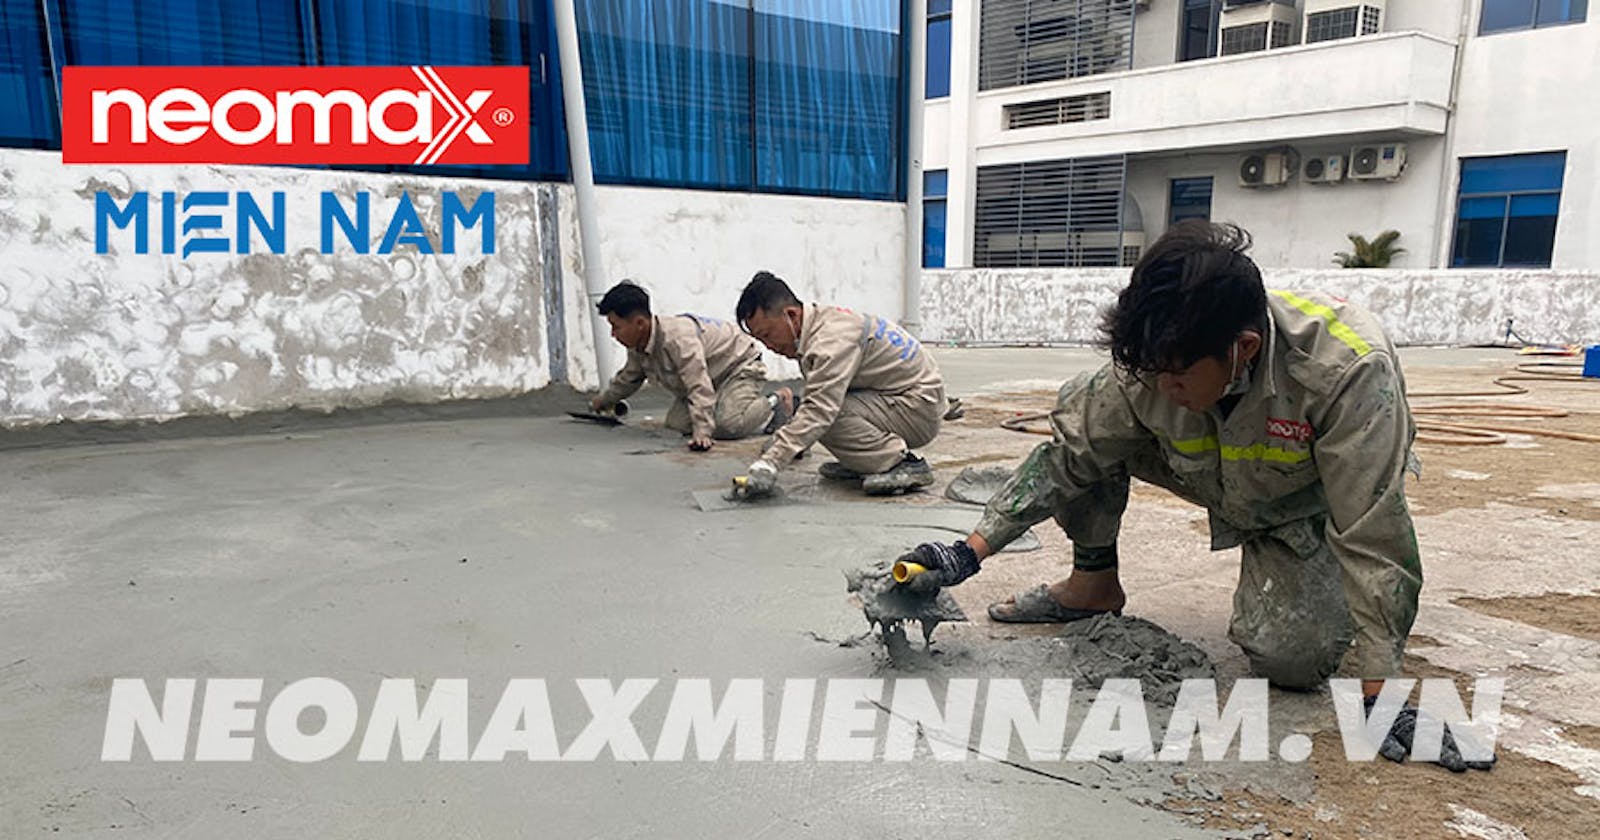 Neomax Mortar C40 - Vữa sửa chữa bê tông